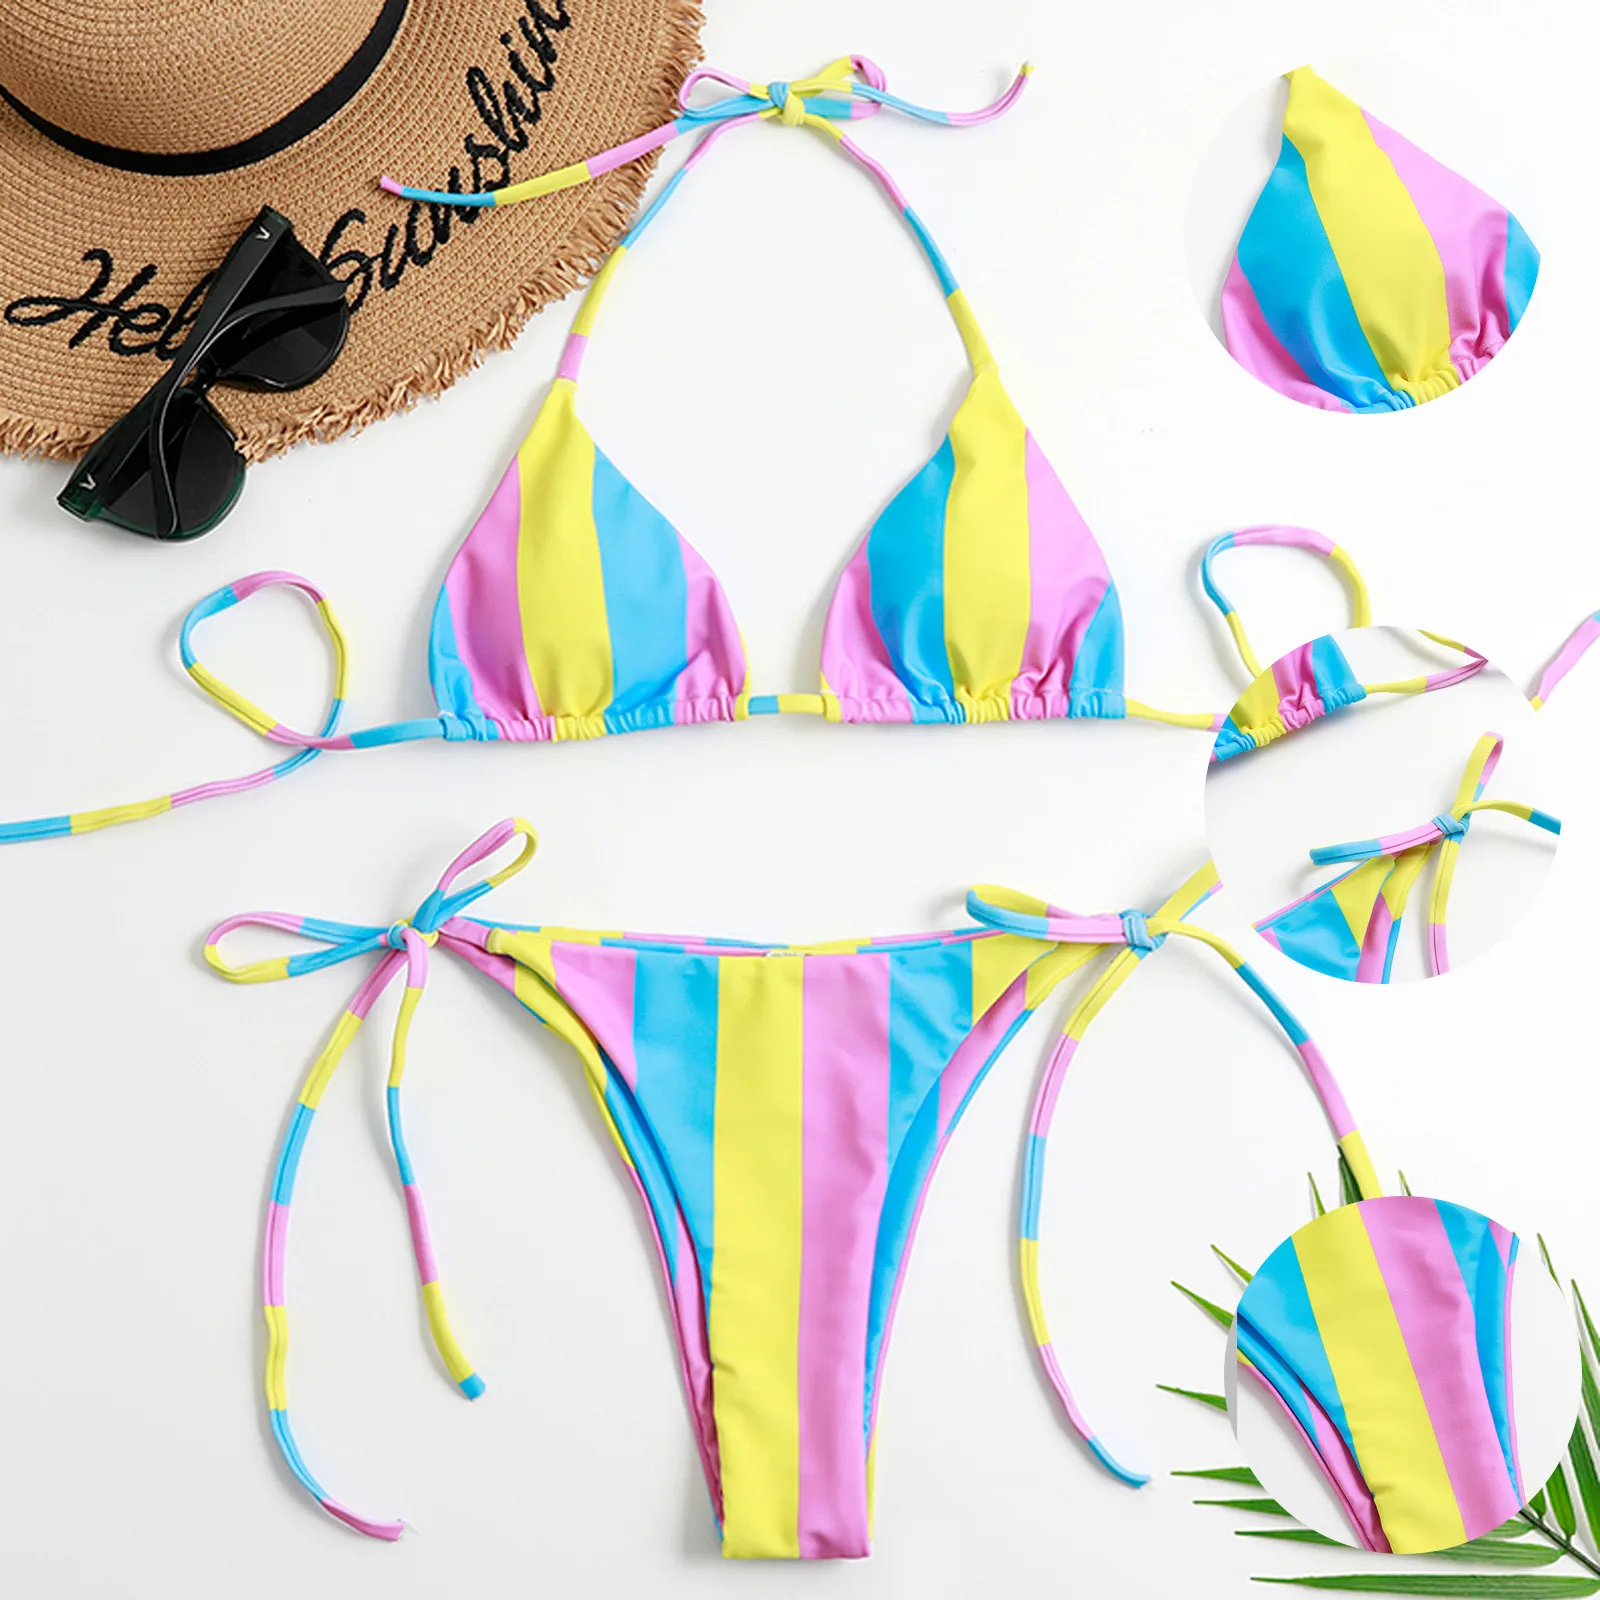 

Женский бандажный комплект бикини с принтом листьев, бразильский купальник пуш-ап, пляжный купальник, купальный костюм для женщин 2021, женск...